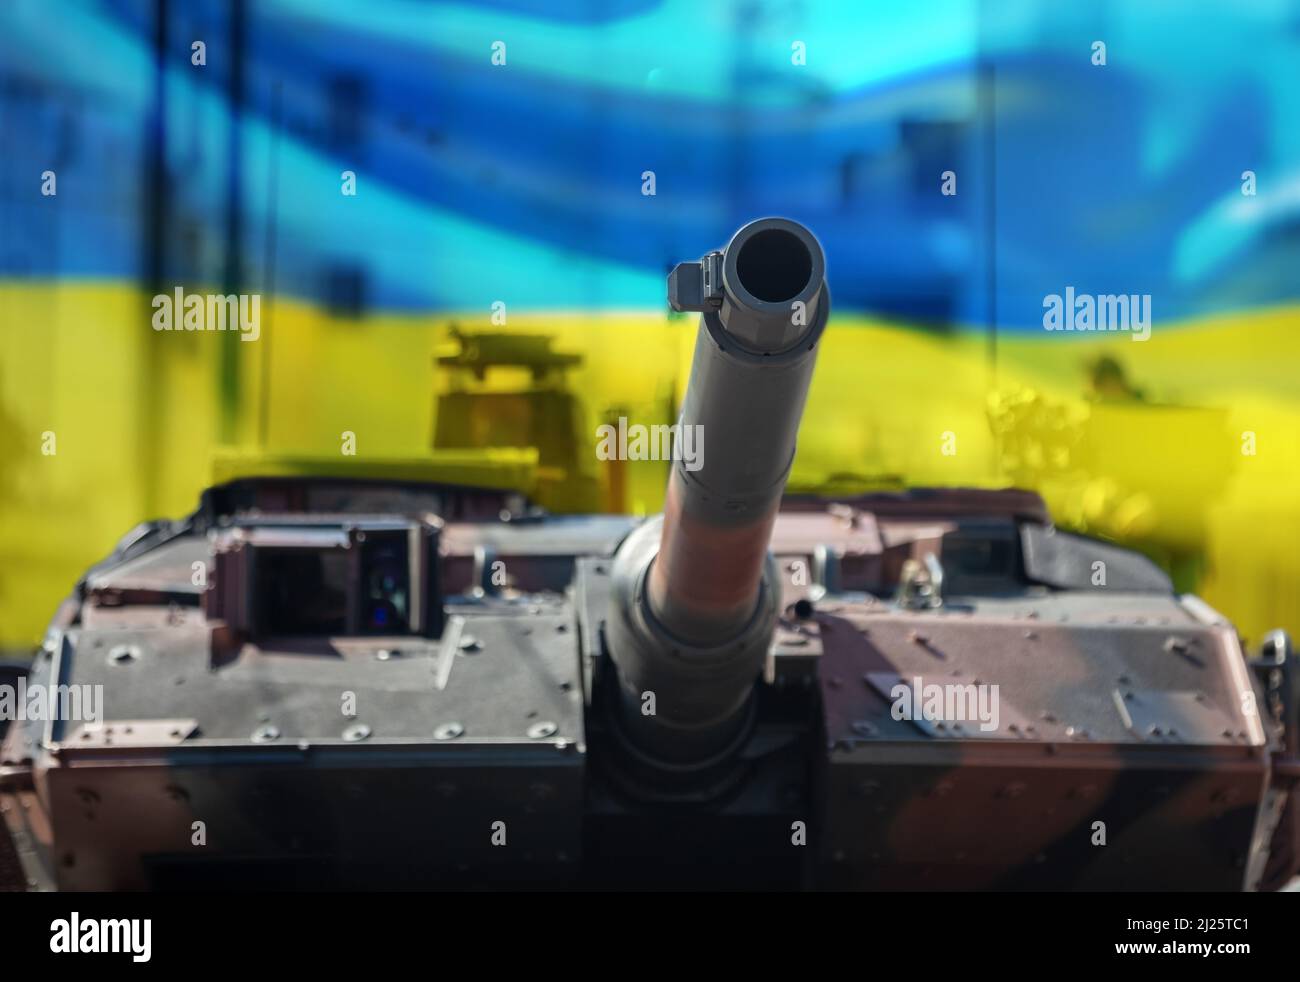 Char de combat principal Leopard, arrière-plan du drapeau ukrainien. Véhicule lourd militaire, fond de ville. Équipement de l'armée pour la guerre et la défense Banque D'Images